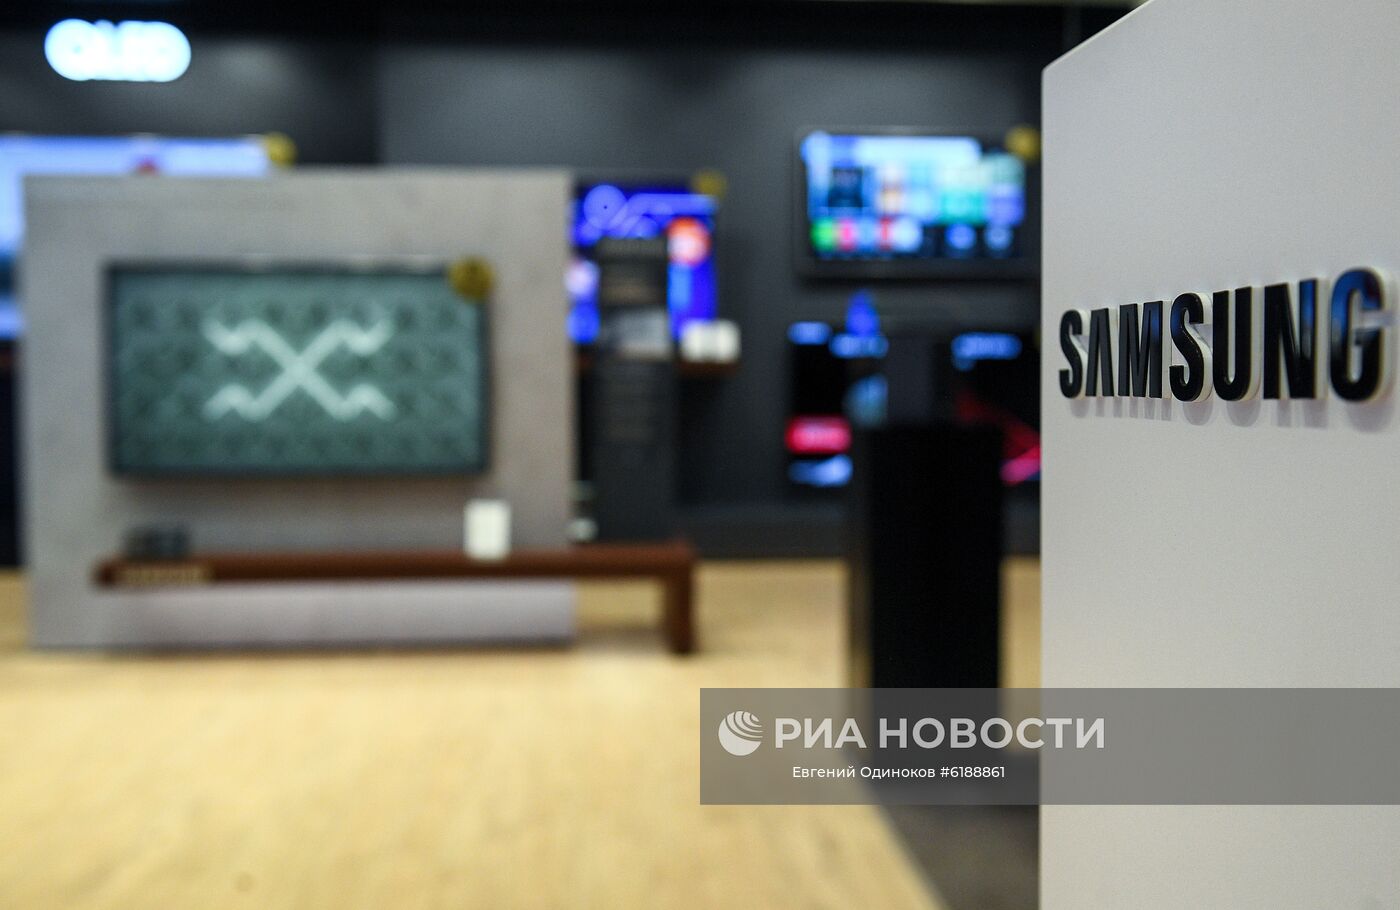 Фирменный салон Samsung Electronics в Москве